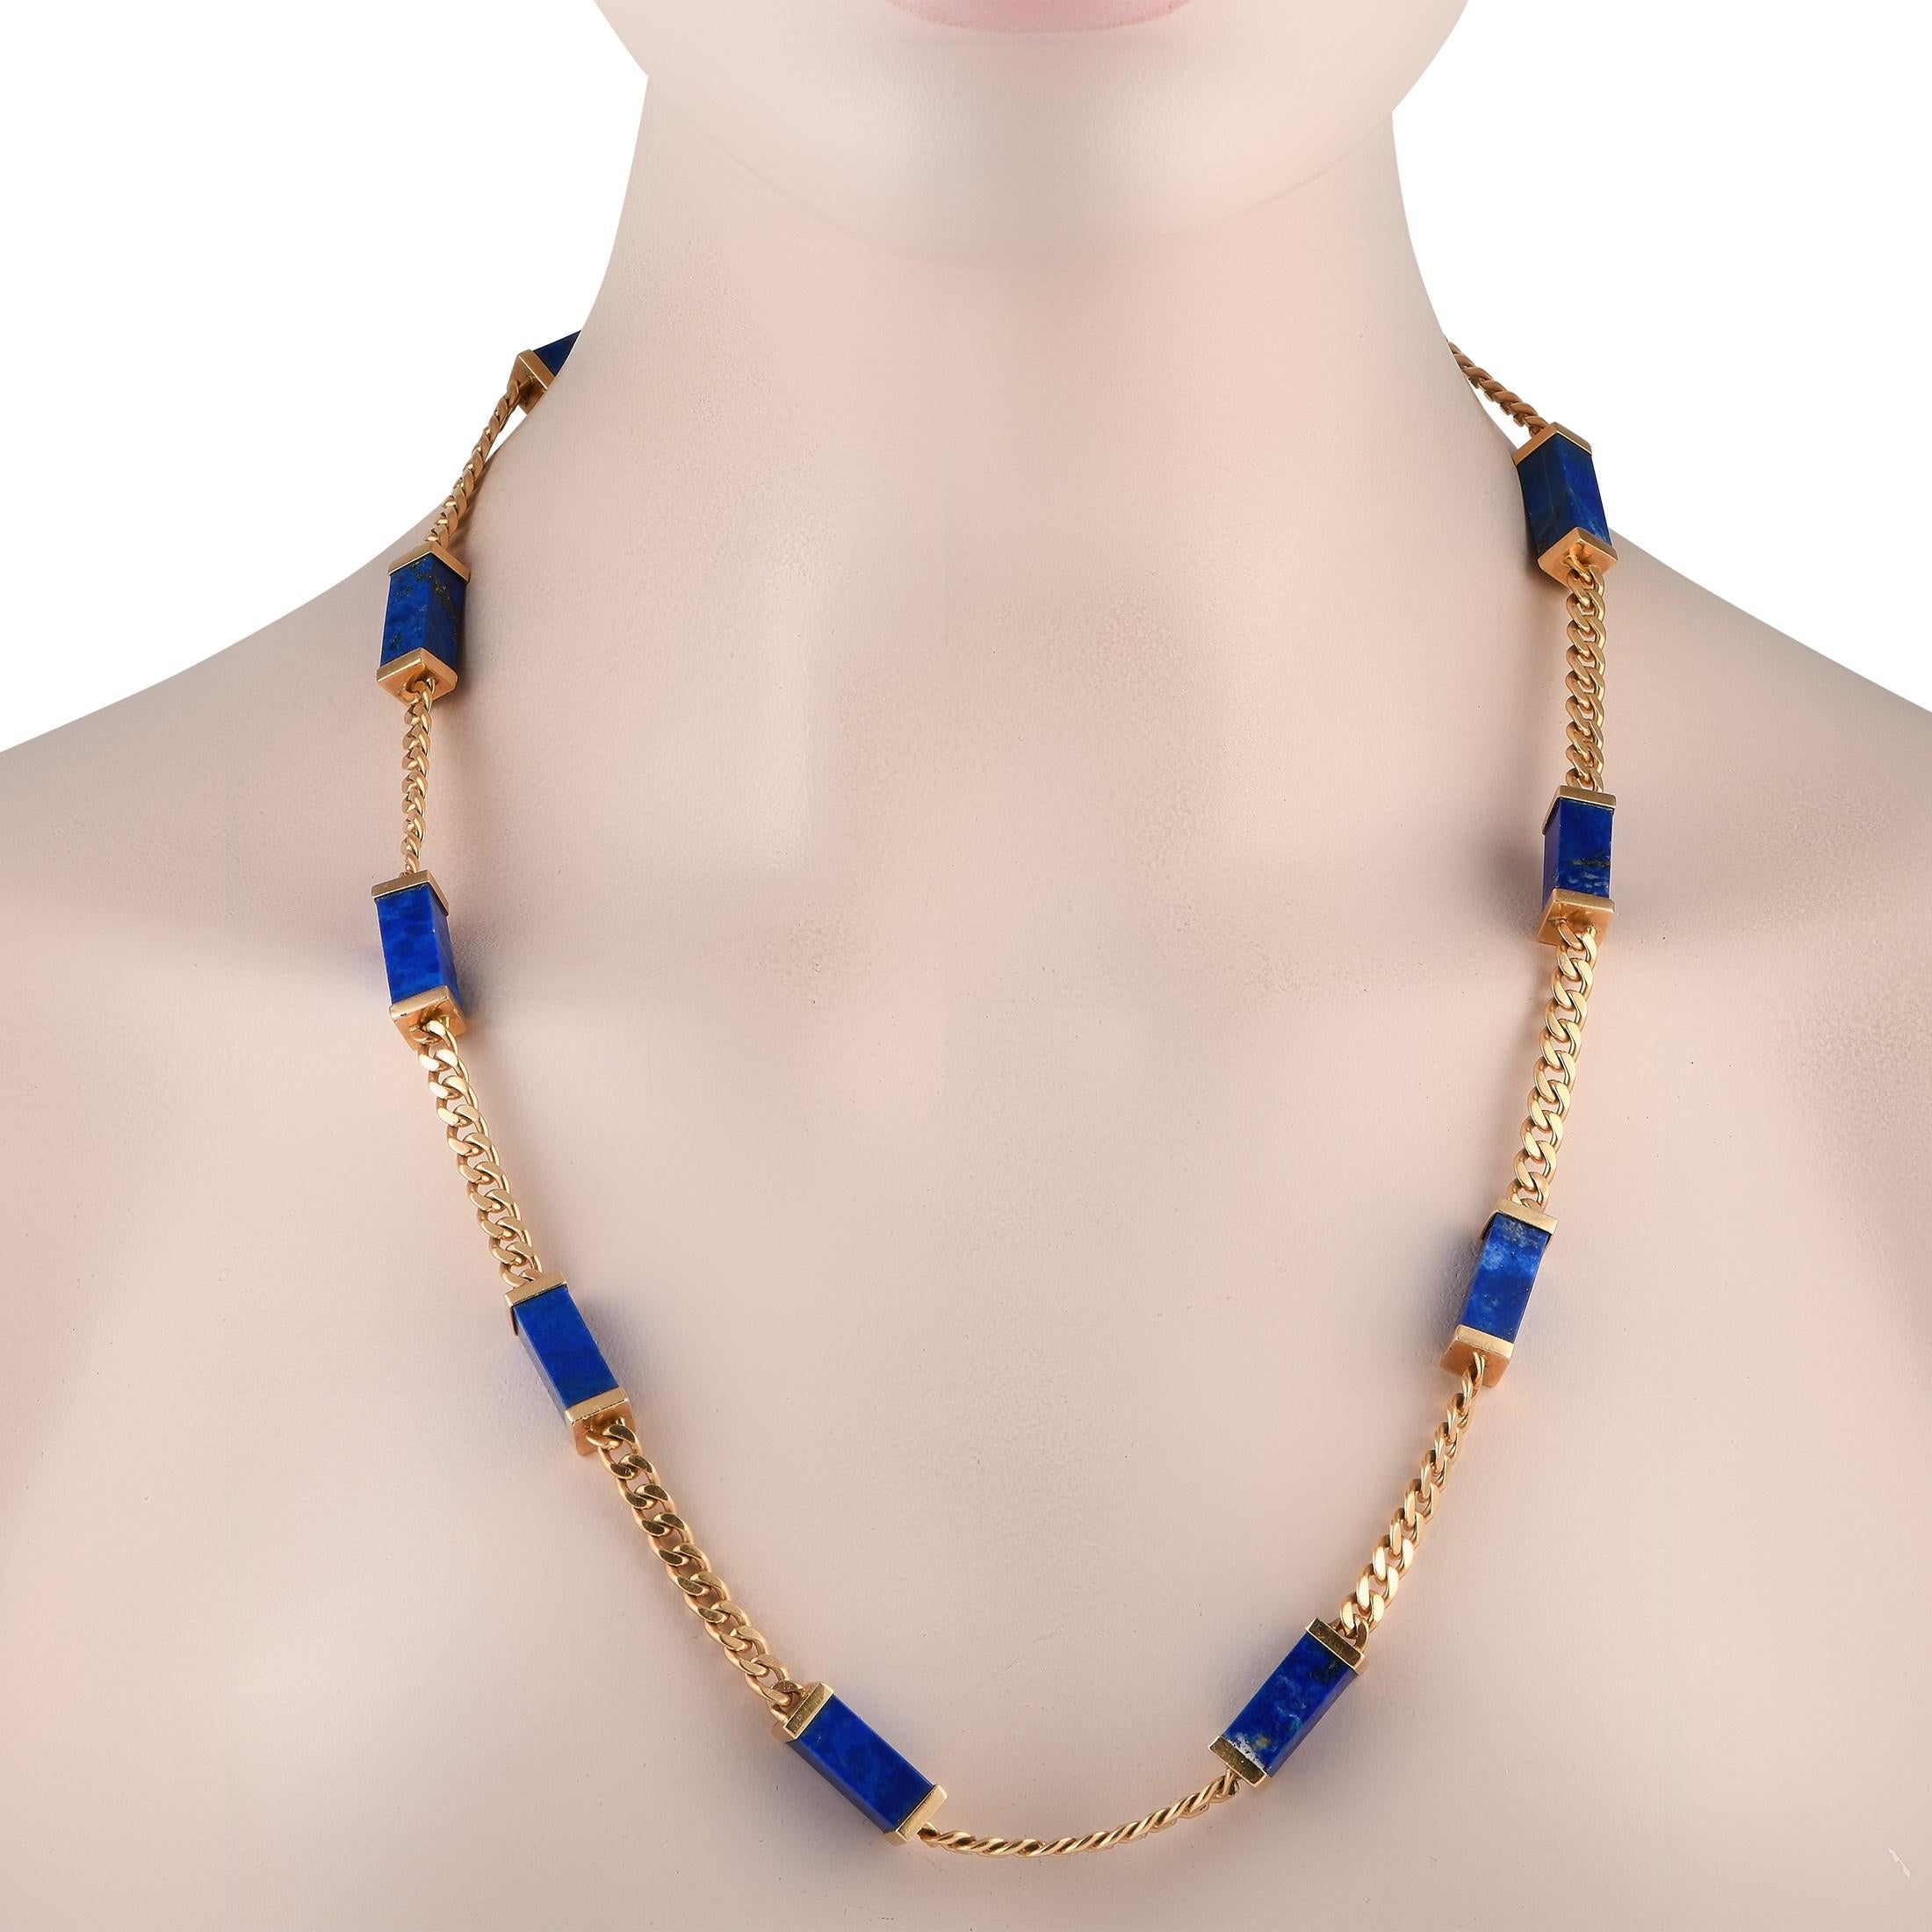 Les pierres précieuses Lapis bleues captivantes contrastent magnifiquement avec la chaîne en or jaune 14K de ce collier vintage. Mesurant 24 de long, cette pièce de luxe est indéniablement élégante et ajoute sans effort une touche de couleur à